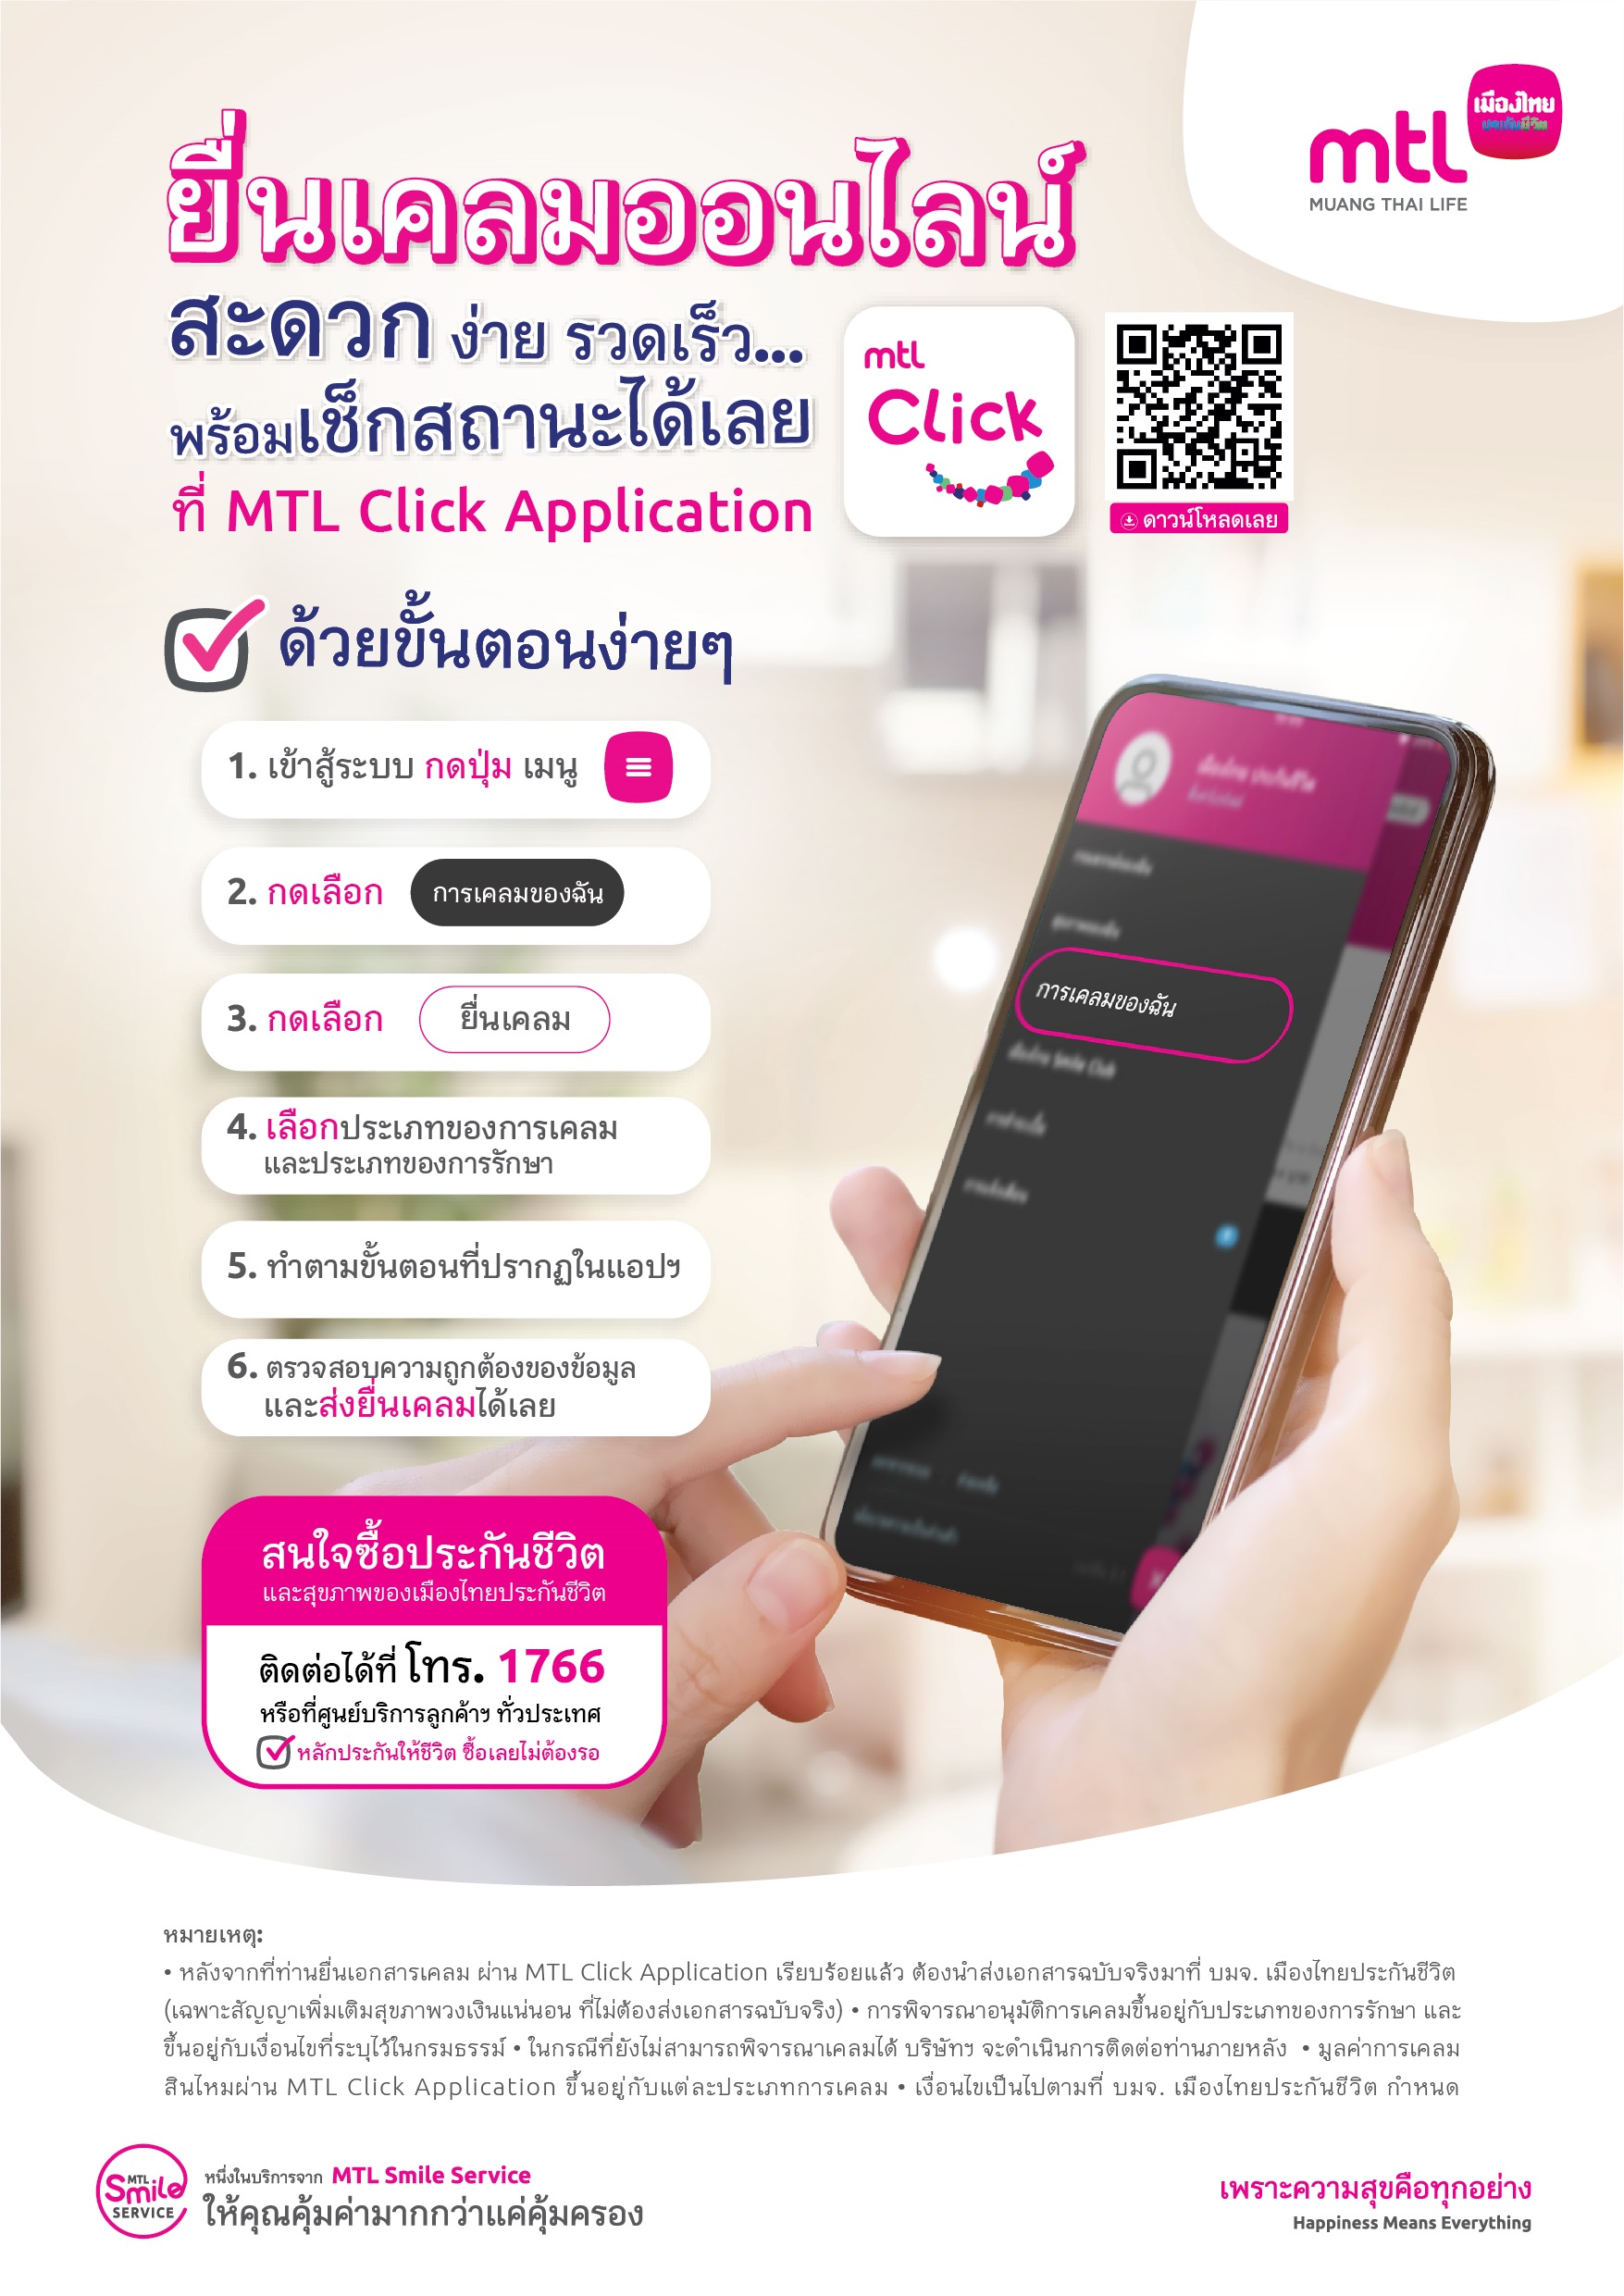 เมืองไทยประกันชีวิต ตอกย้ำการเป็นผู้นำด้านการบริการ พร้อมให้บริการยื่นเคลมสินไหมออนไลน์ ผ่าน MTL Click Application